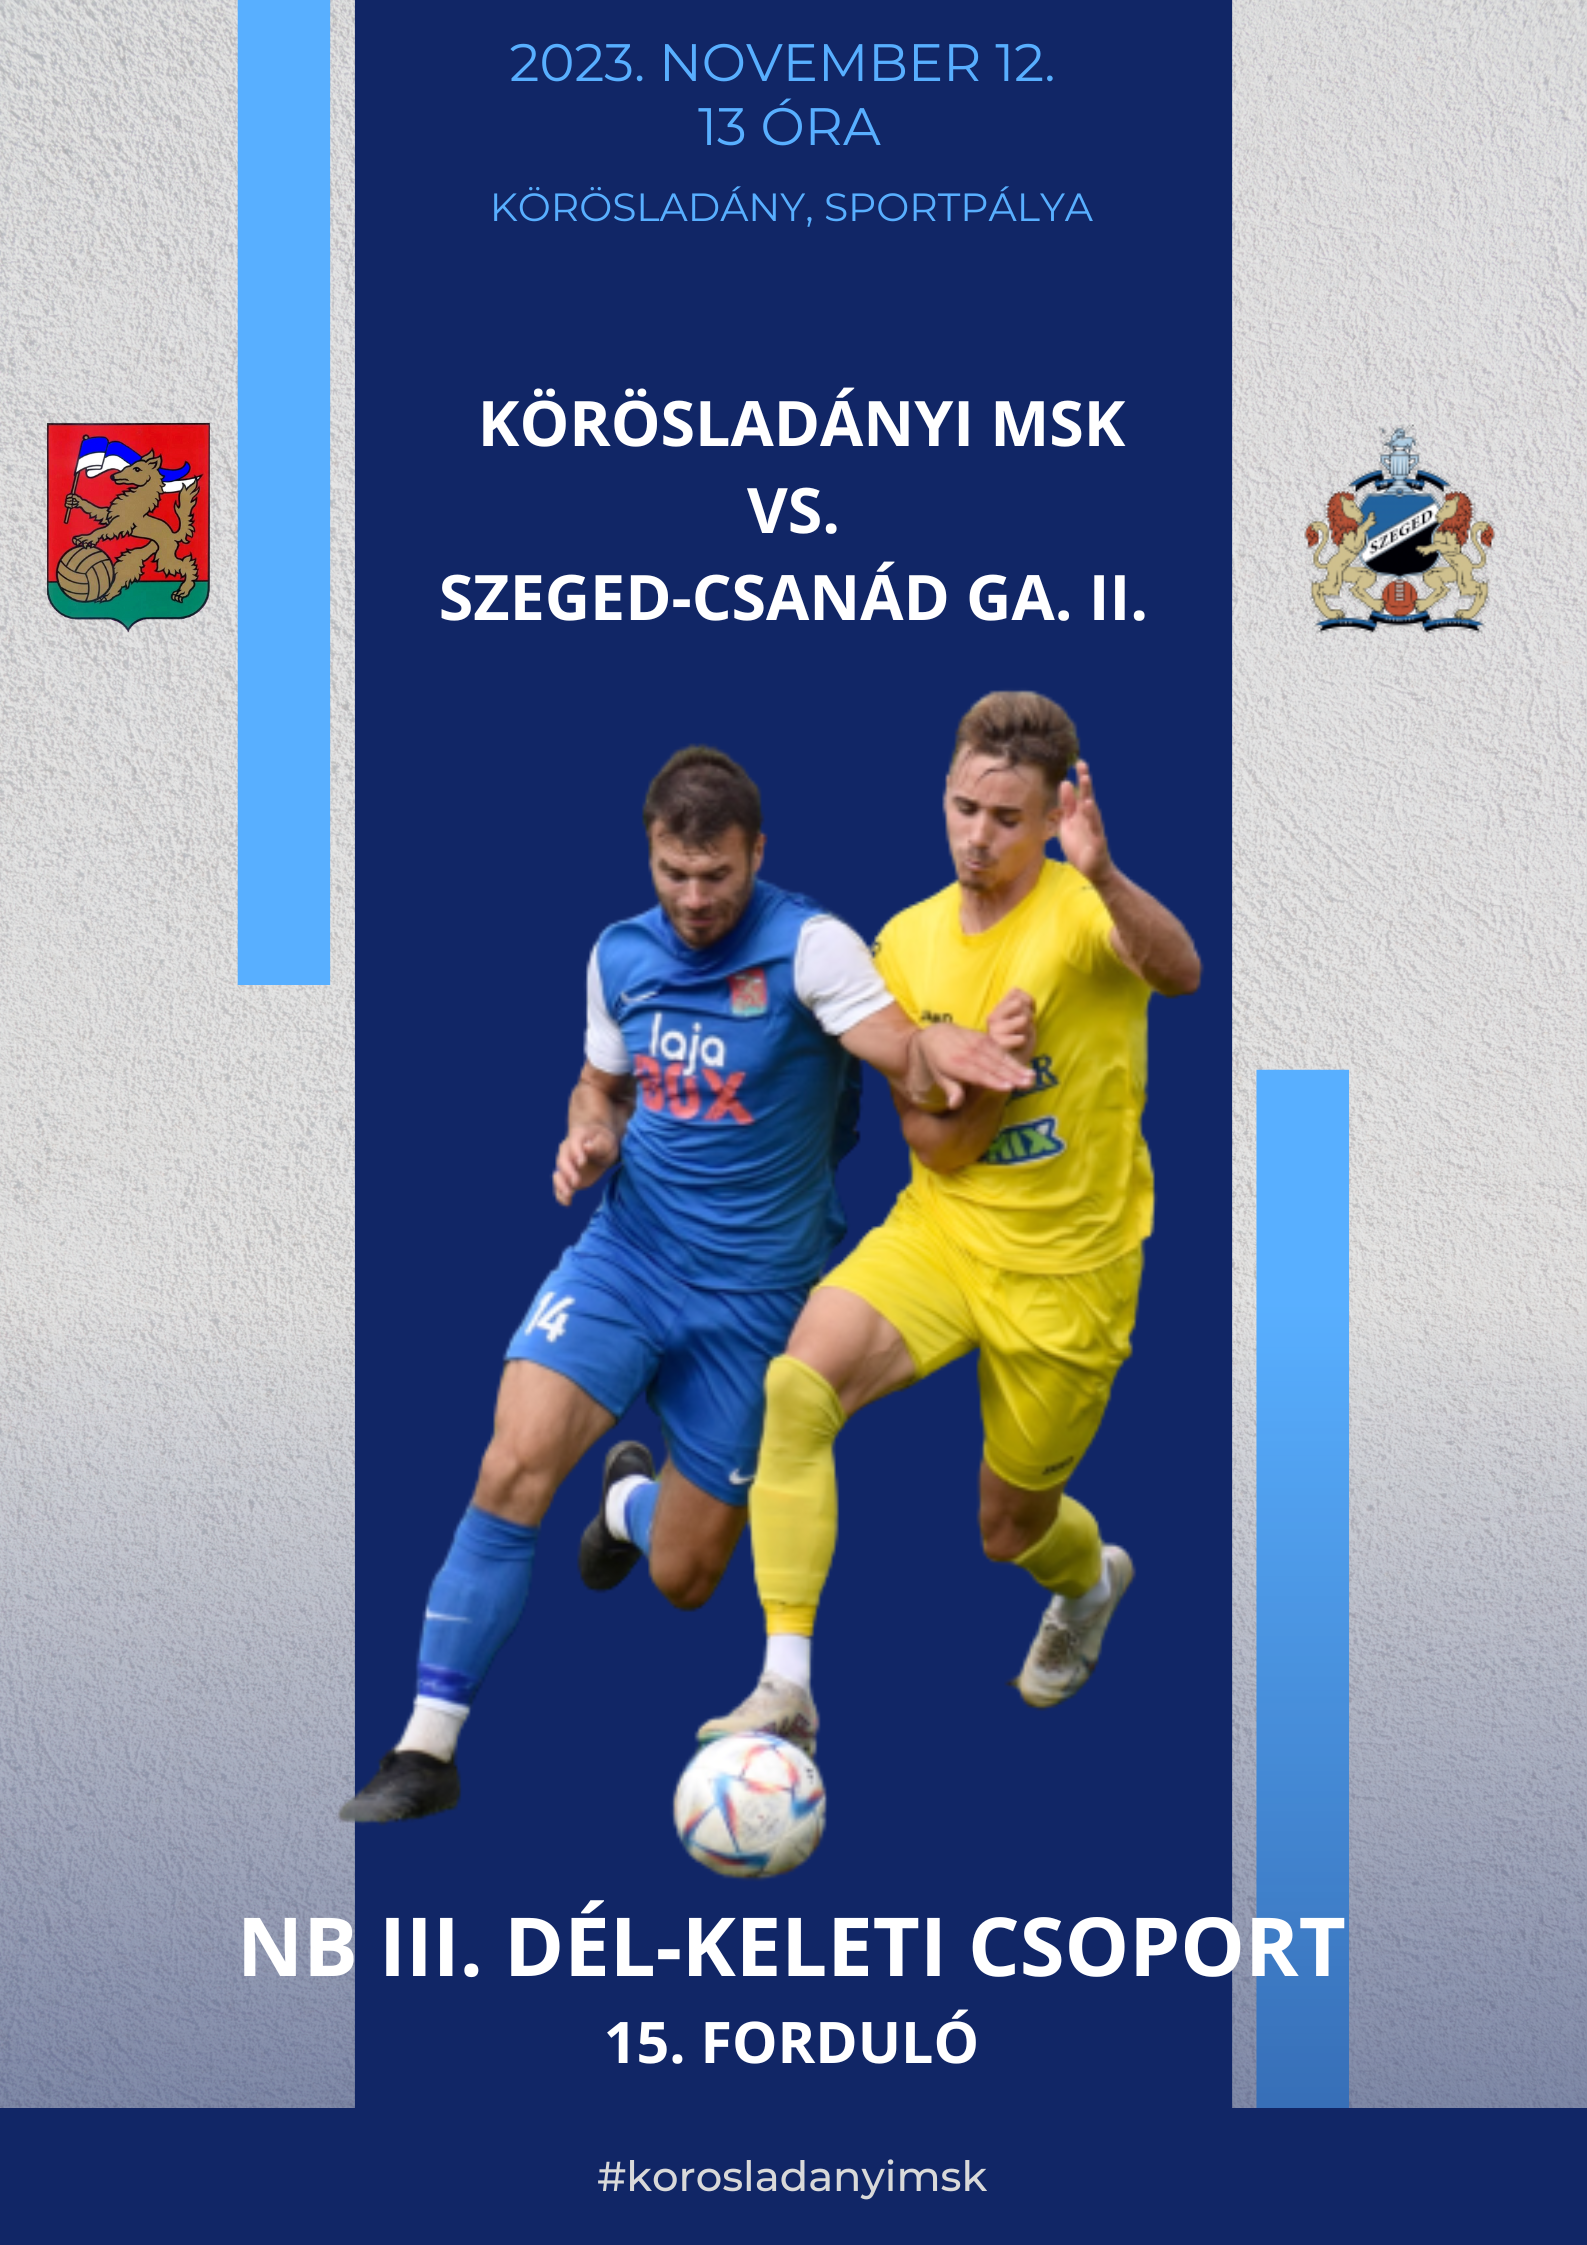 Szeged-Csanád vs Paks, Club Friendly Games